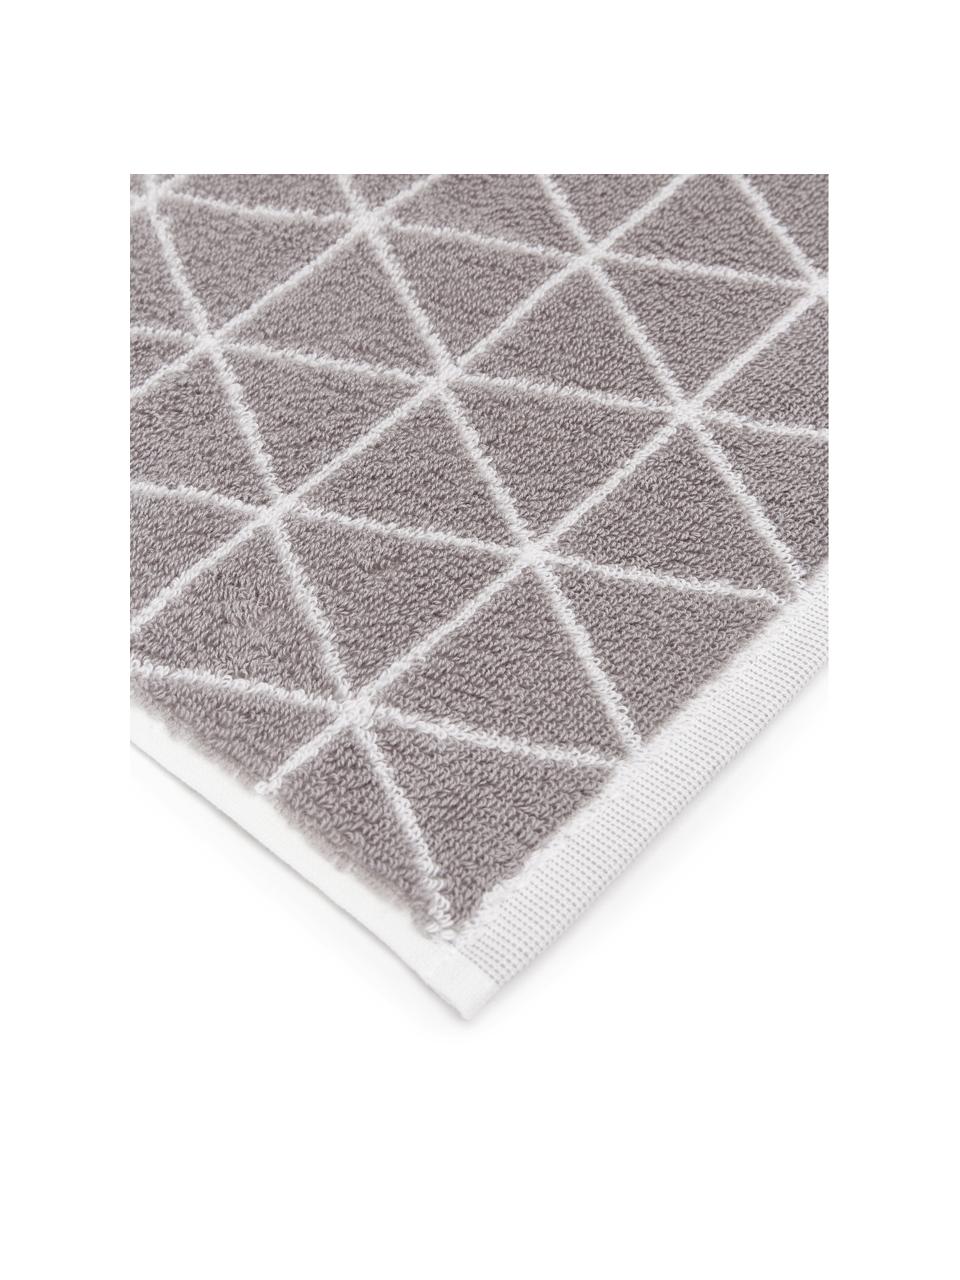 Wende-Handtuch Elina mit grafischem Muster in verschiedenen Grössen, Taupe, Off White, Handtuch, B 50 x L 100 cm, 2 Stück